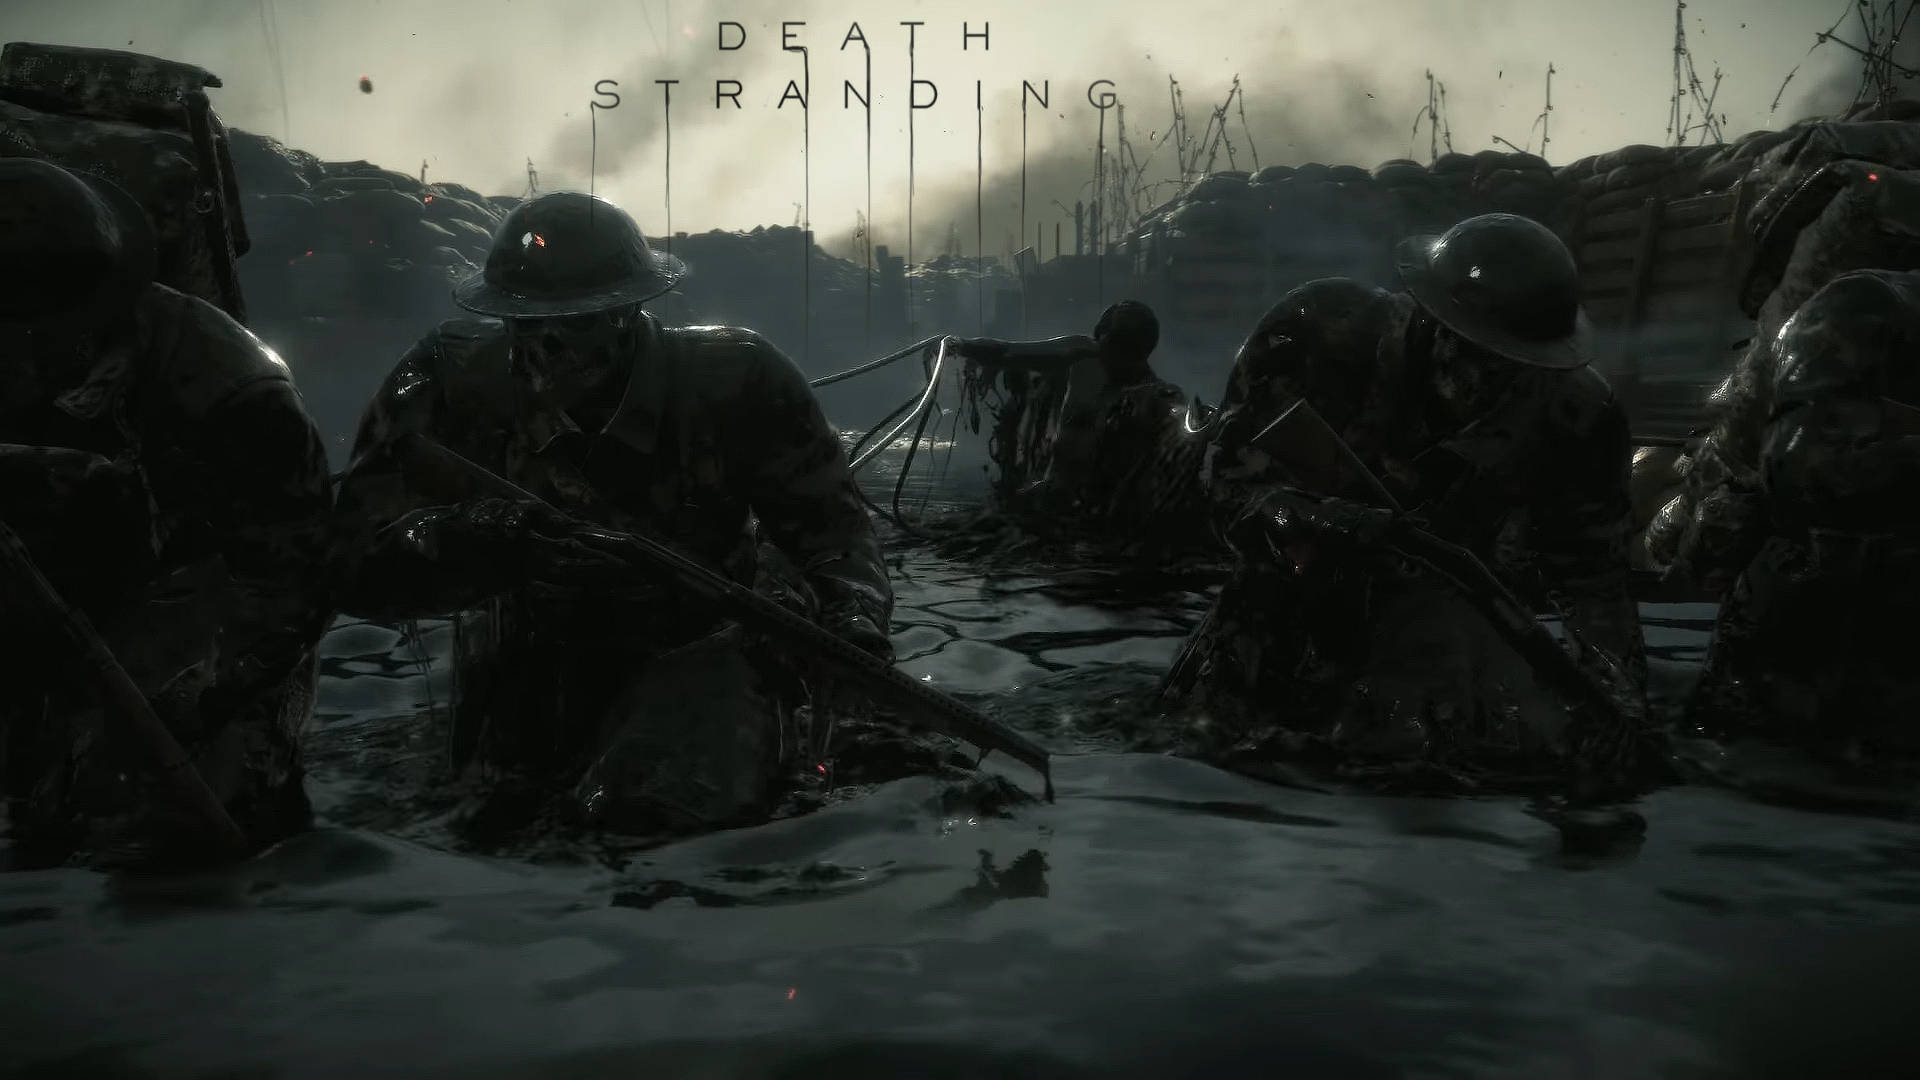 Creepy Skeleton Soldiers Death Stranding Dark Wallpaper